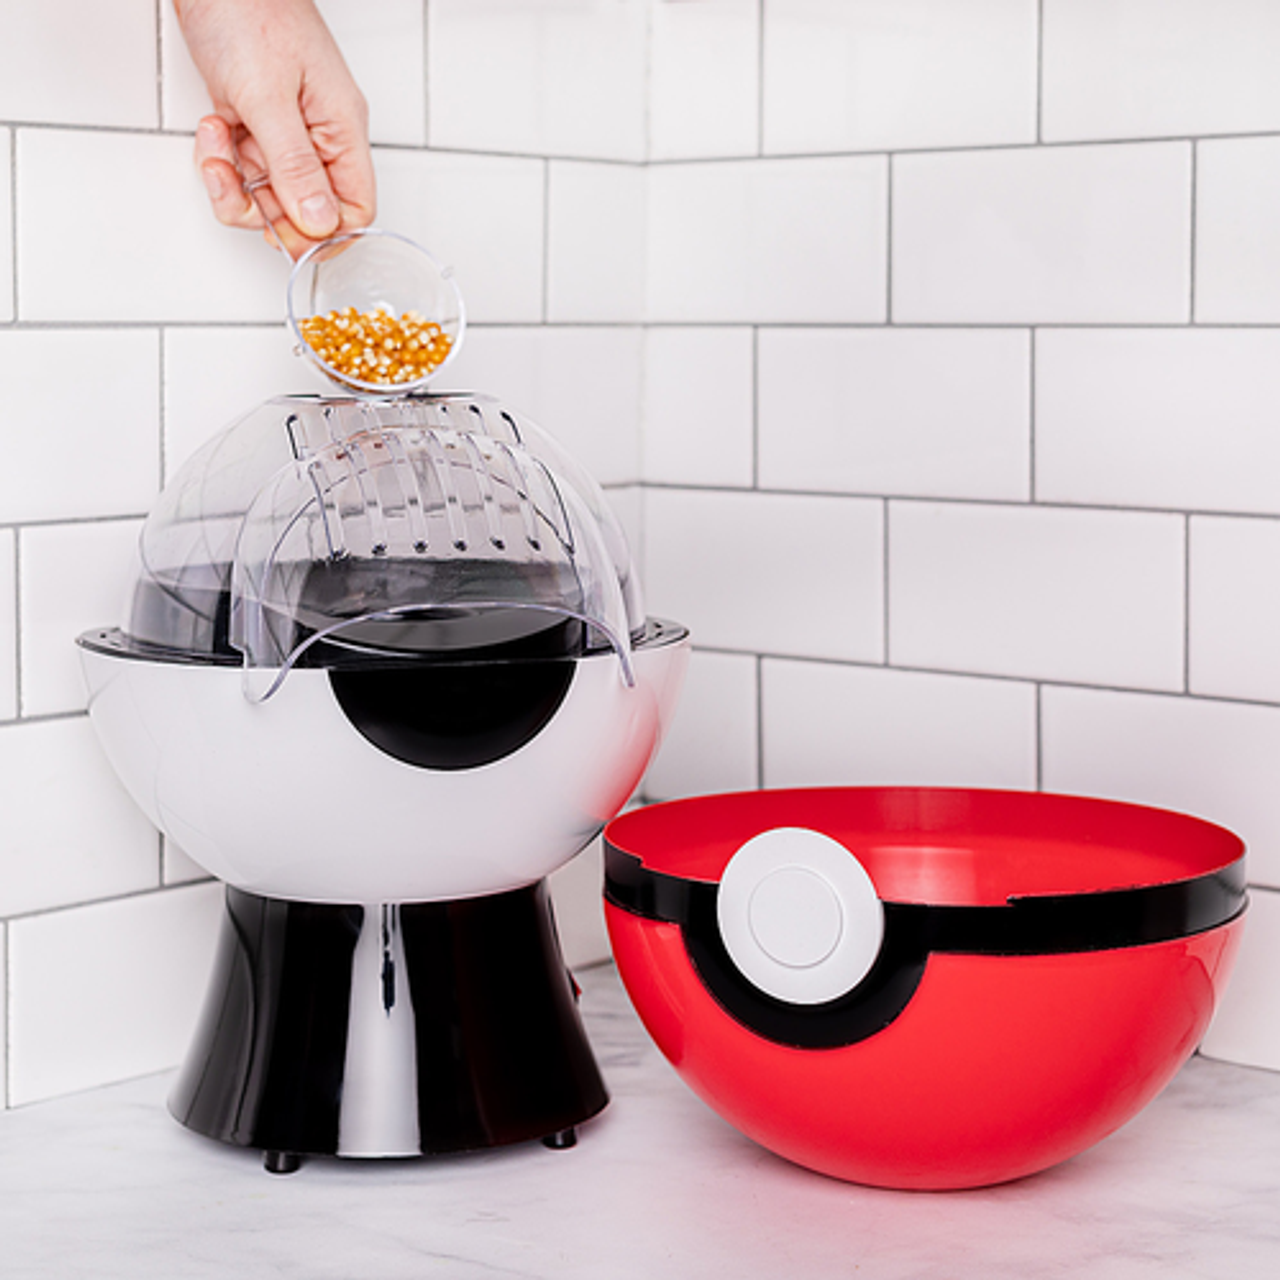 Uncanny Brands Pokémon Poké Ball Popcorn Maker - Red